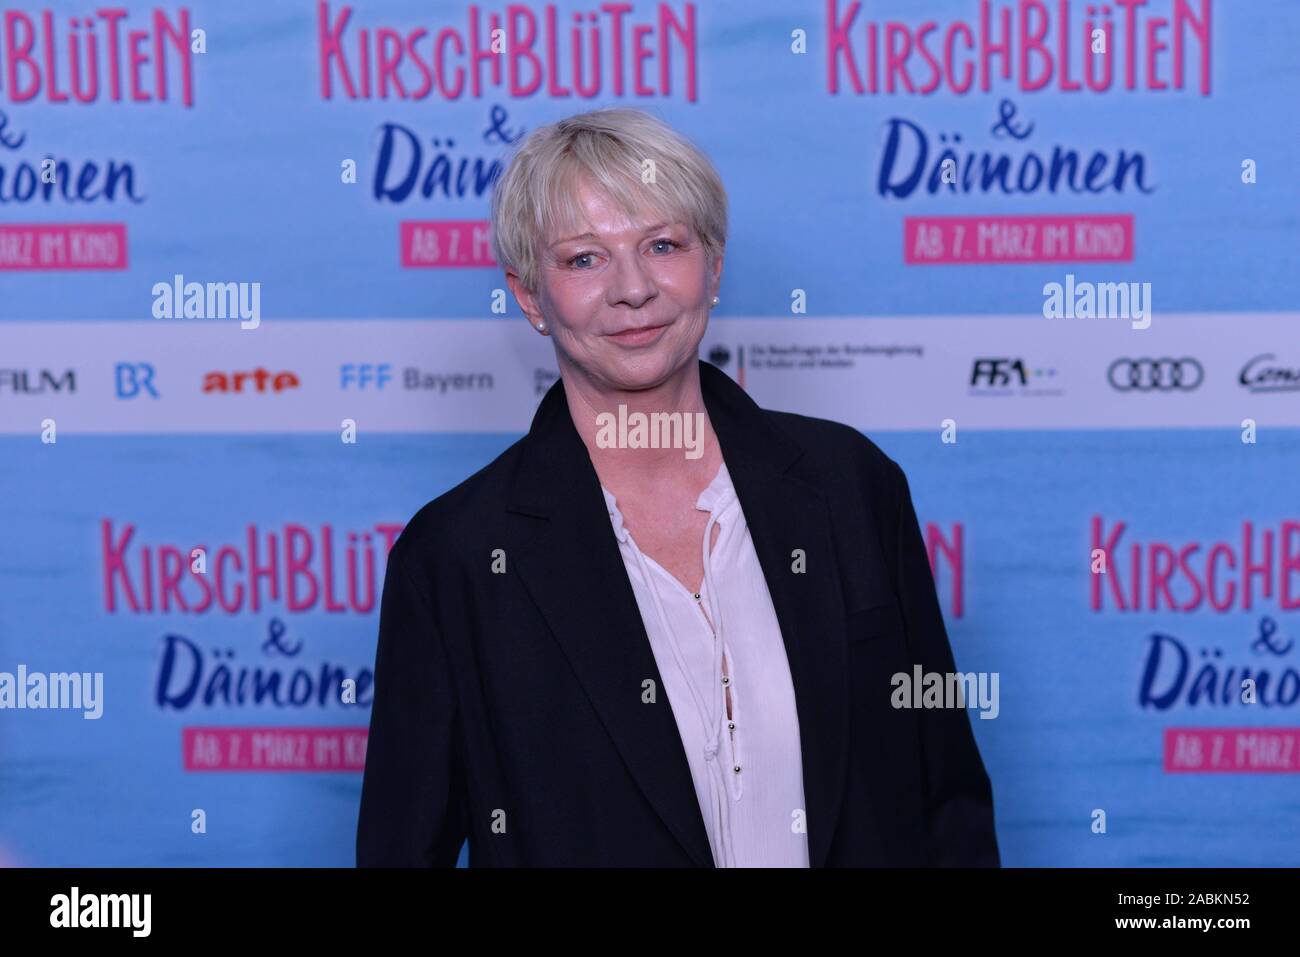 Auteur Rita Falk lors de la première de "Kirschblüten und Dämonen' dans Arri-Kino de Munich. [Traduction automatique] Banque D'Images